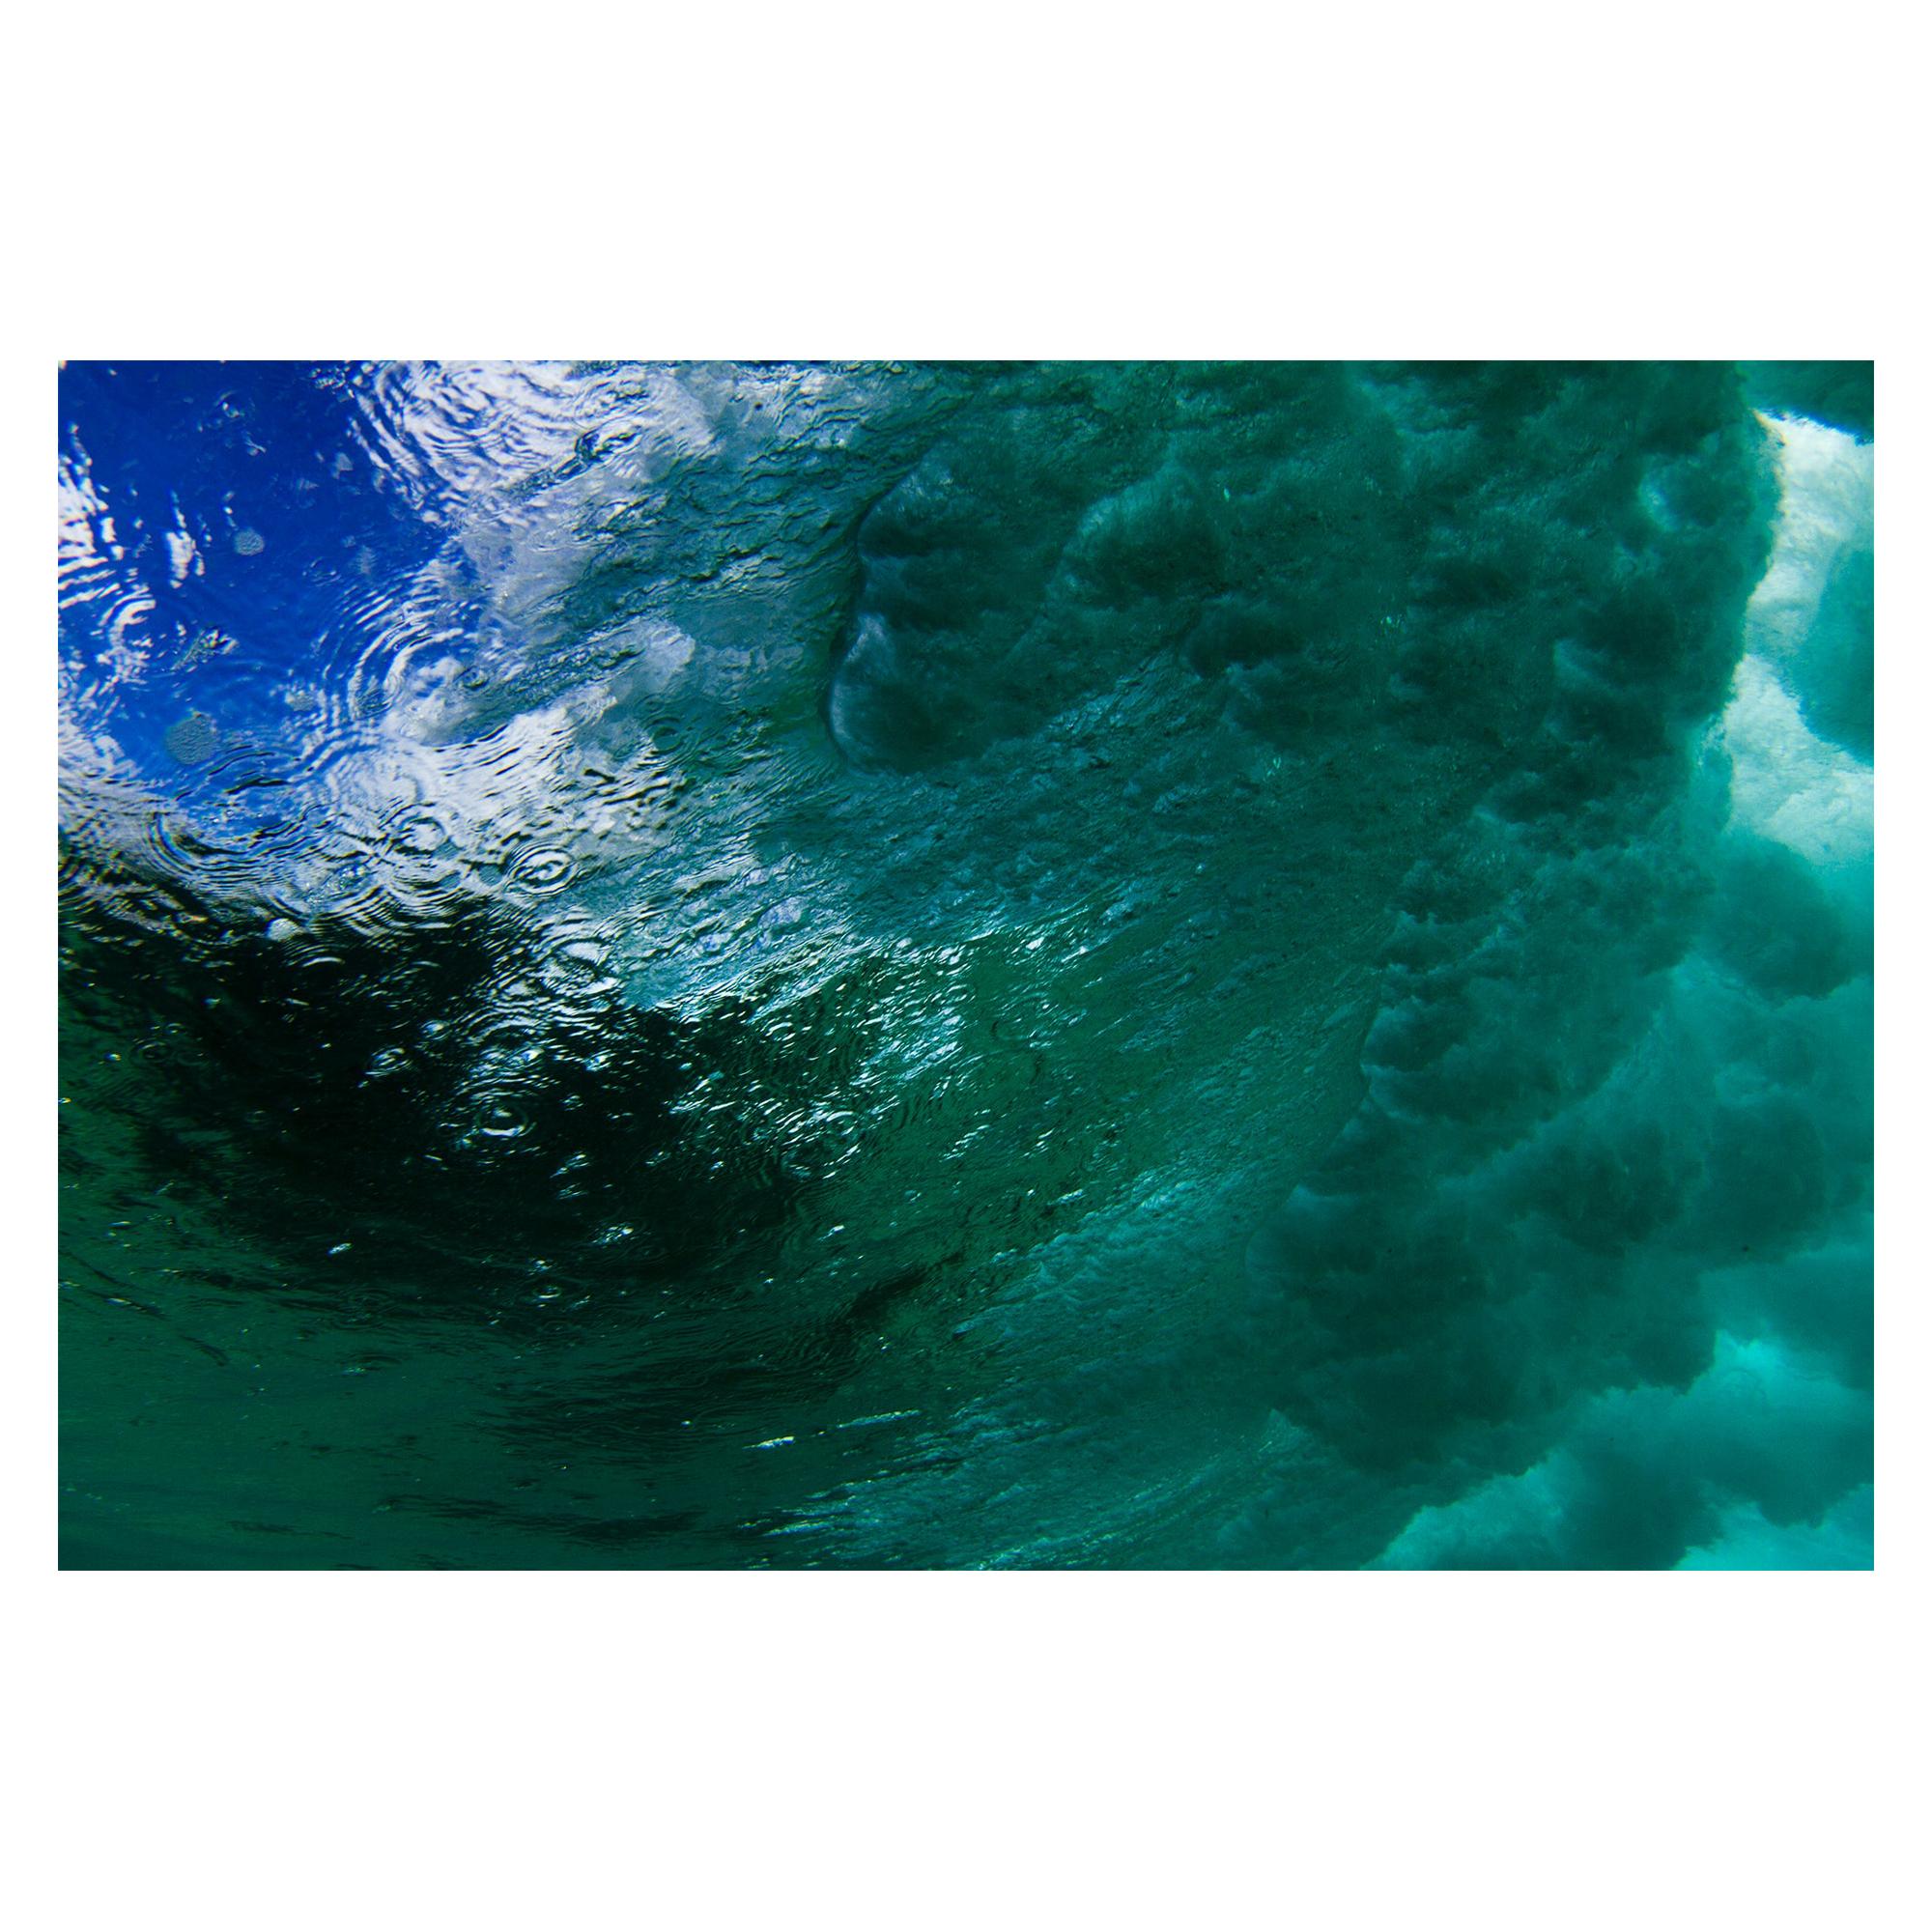 Fotografie „Waves 3“, 2017, von der brasilianischen Fotografin Roberta Borges